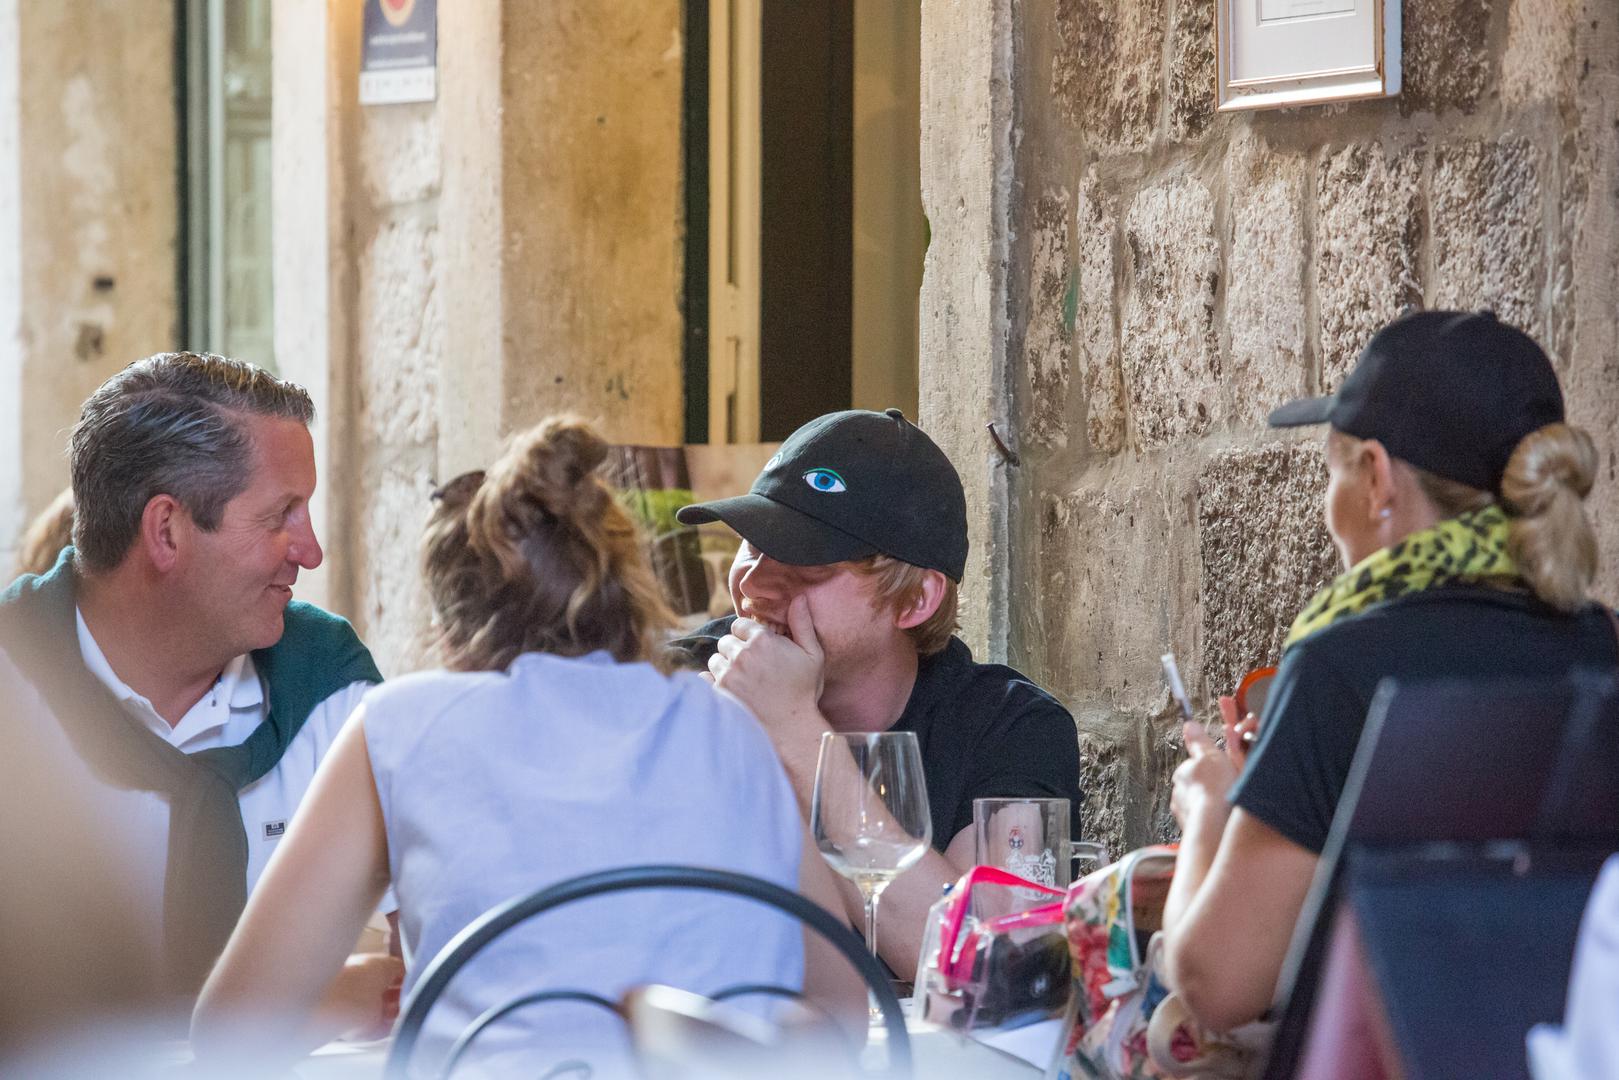 Turistička sezona bliži se kraju, a Dubrovnik je i dalje omiljeno odredište za odmor svjetski poznatih zvijezda. Jučer je u gradu na jugu snimljen poznati glumac Rupert Grint.